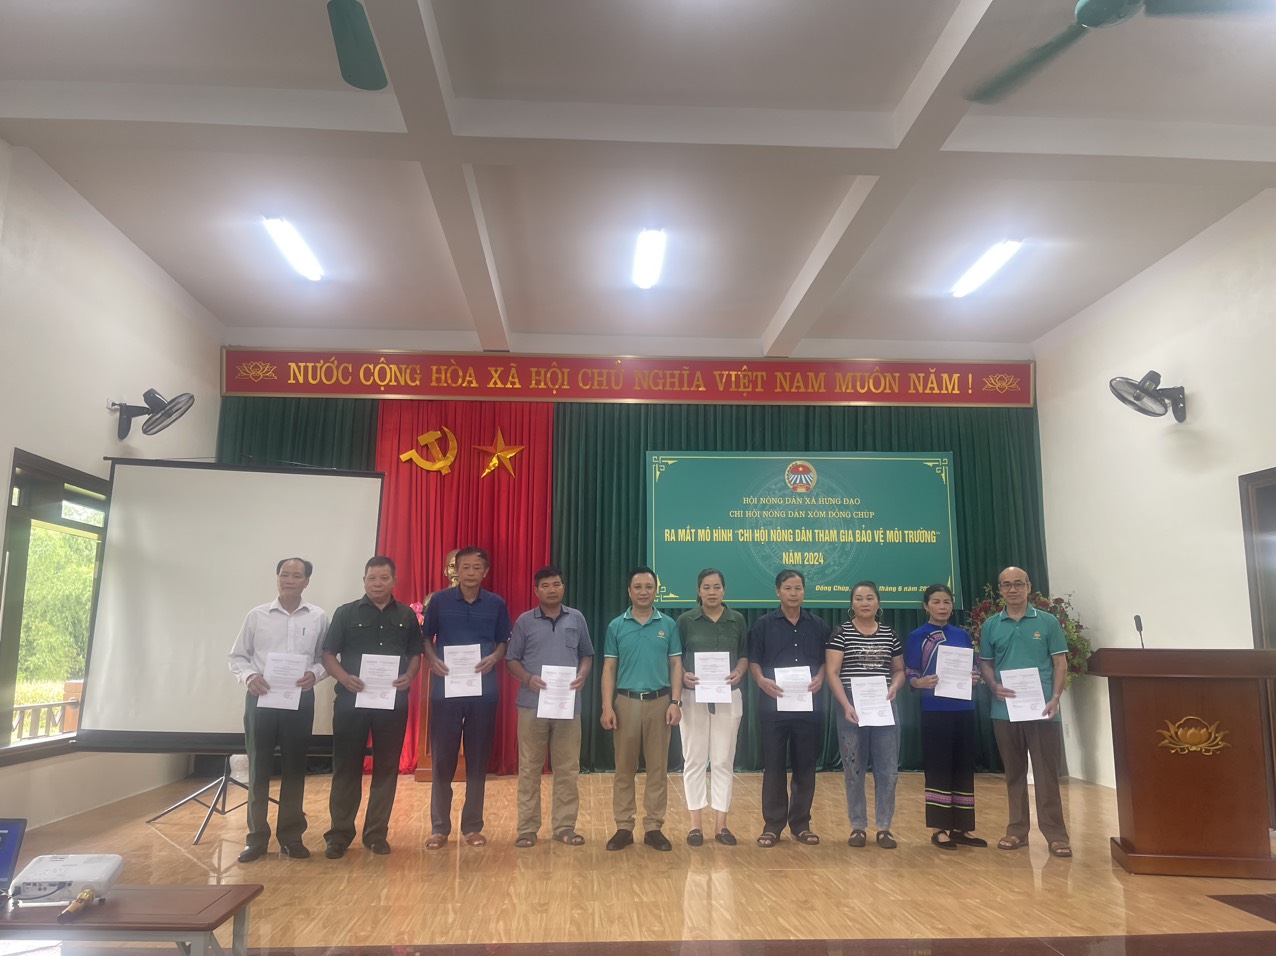 Hội Nông dân xã Hưng Đạo, thành phố Cao Bằng tổ chức sinh hoạt mẫu nâng cao chất lượng sinh hoạt Chi hội và ra mắt câu lạc bộ “Chi hội nông dân tham gia bảo vệ môi trường”